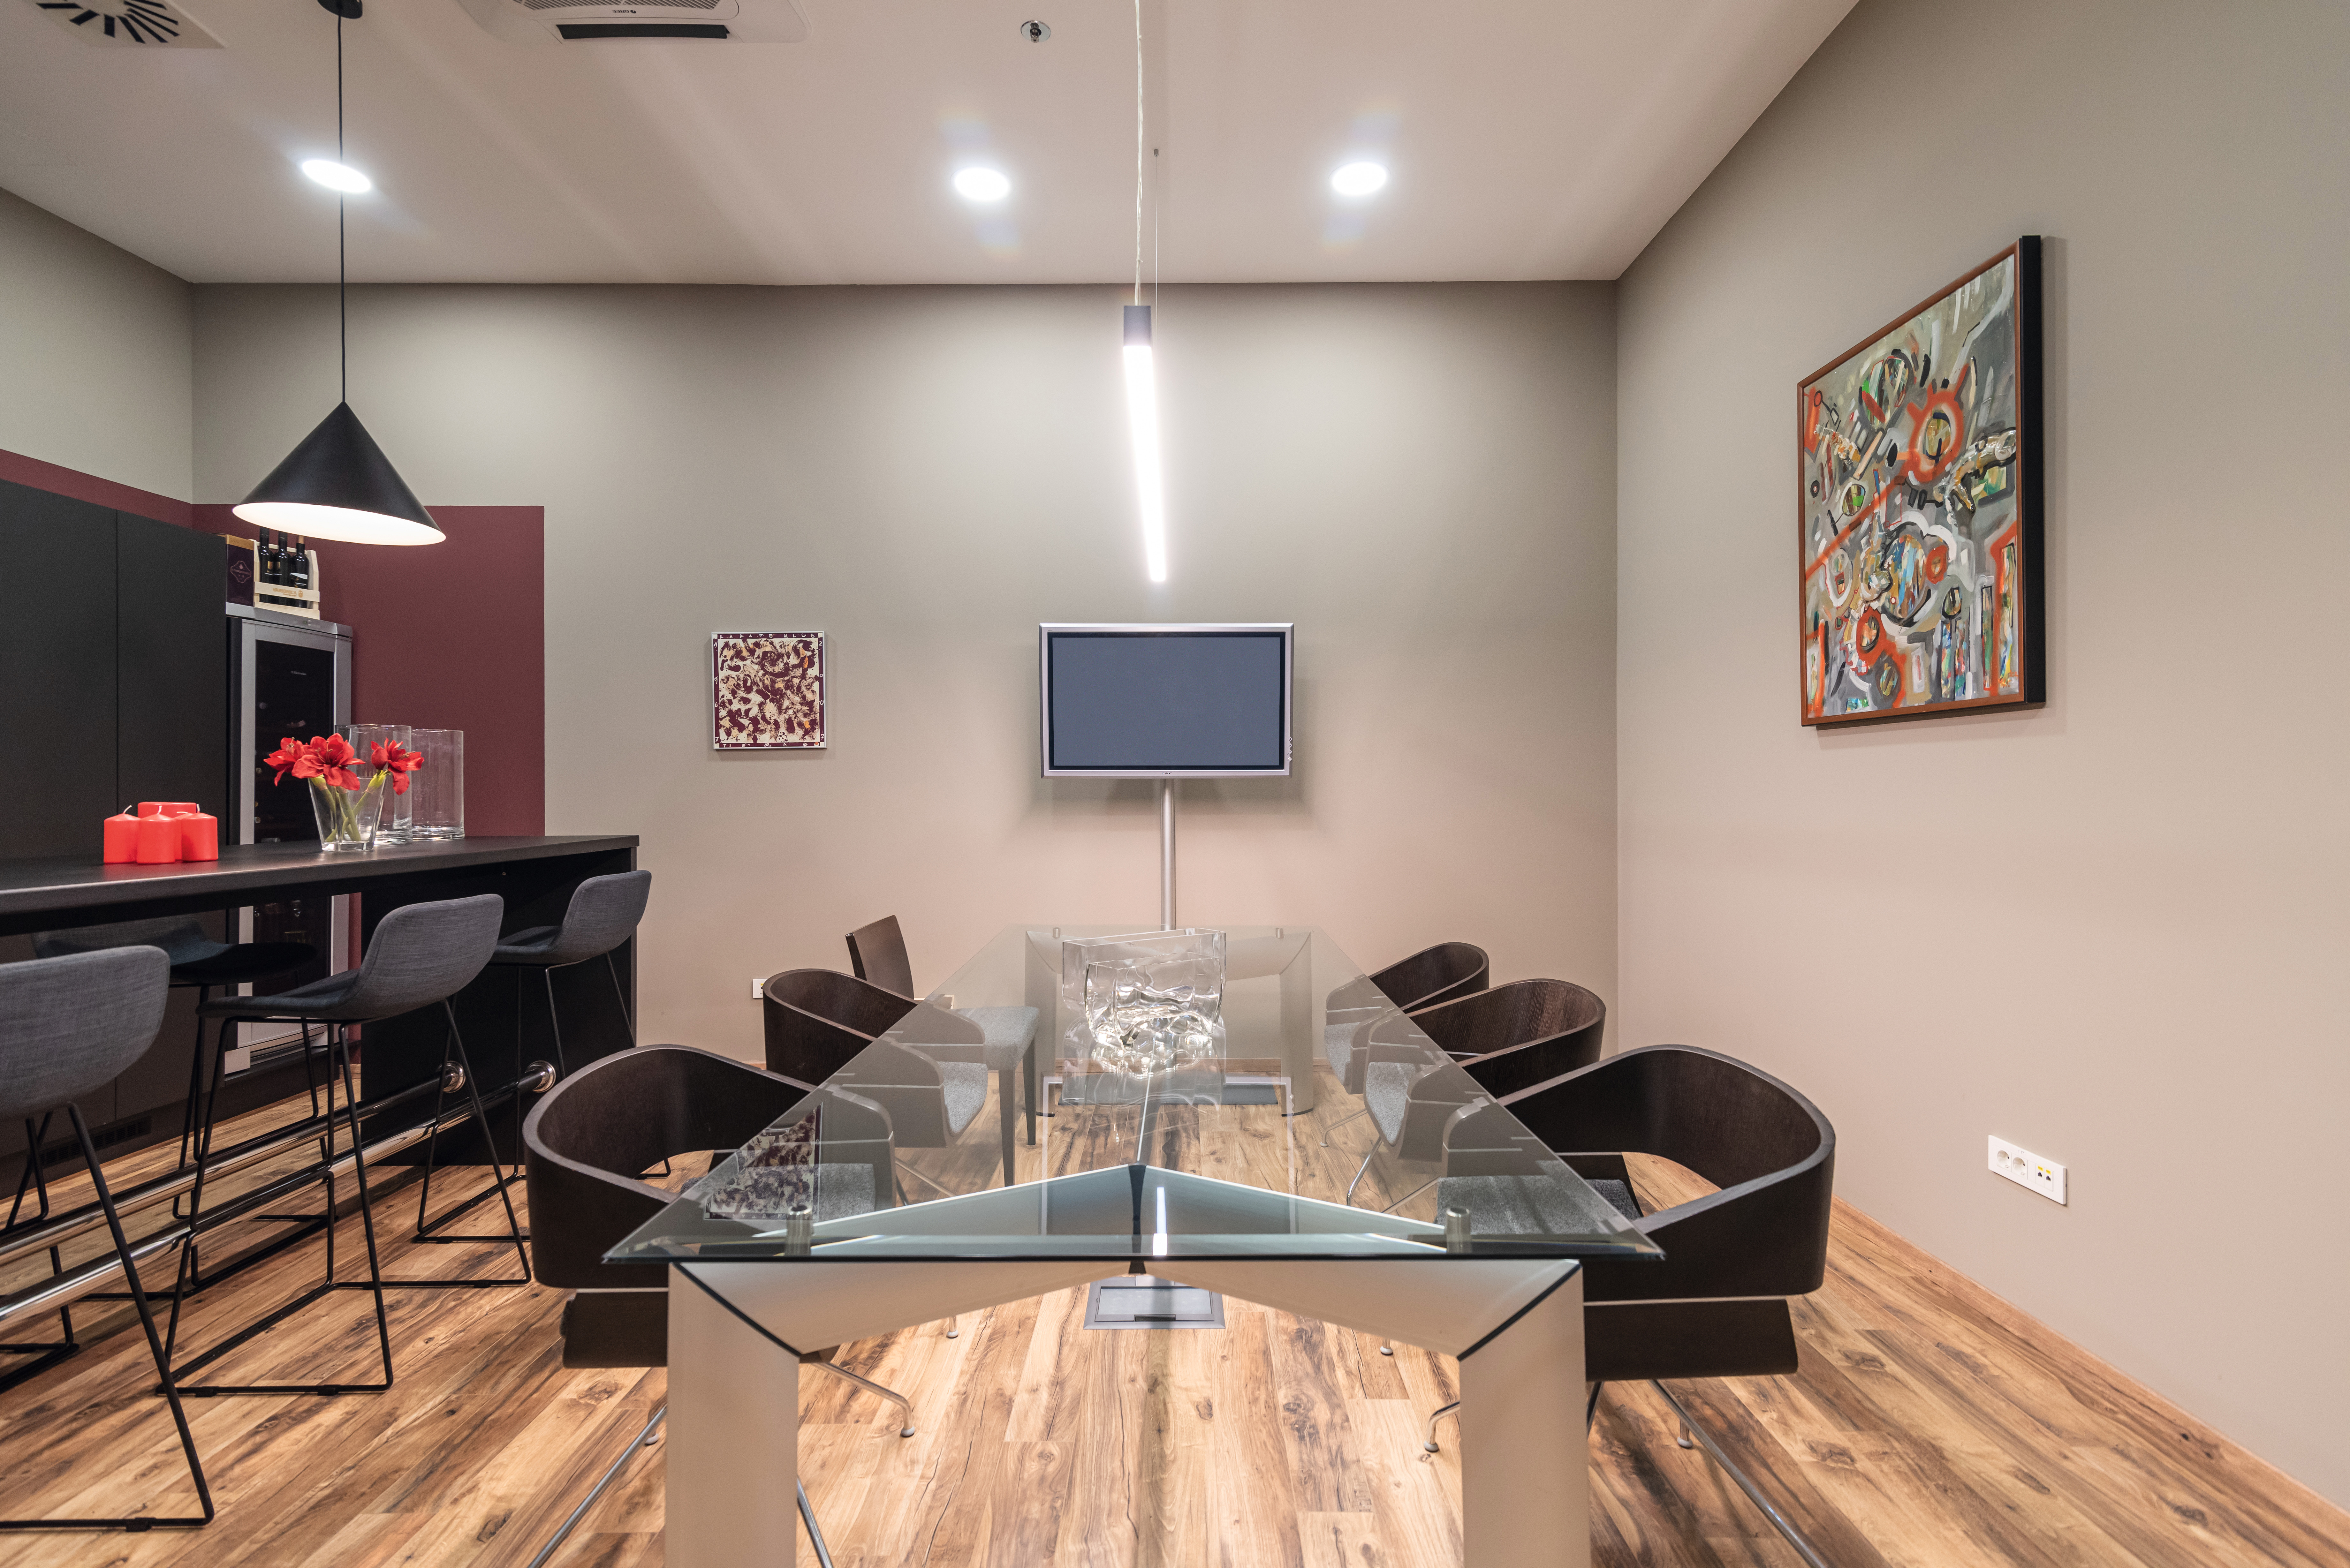 Ko gre za pisarniško pohištvo, se dizajn prepleta s trpežnostjo. EPL044 PRO laminatni podi so idealna izbira za obremenjene prostore